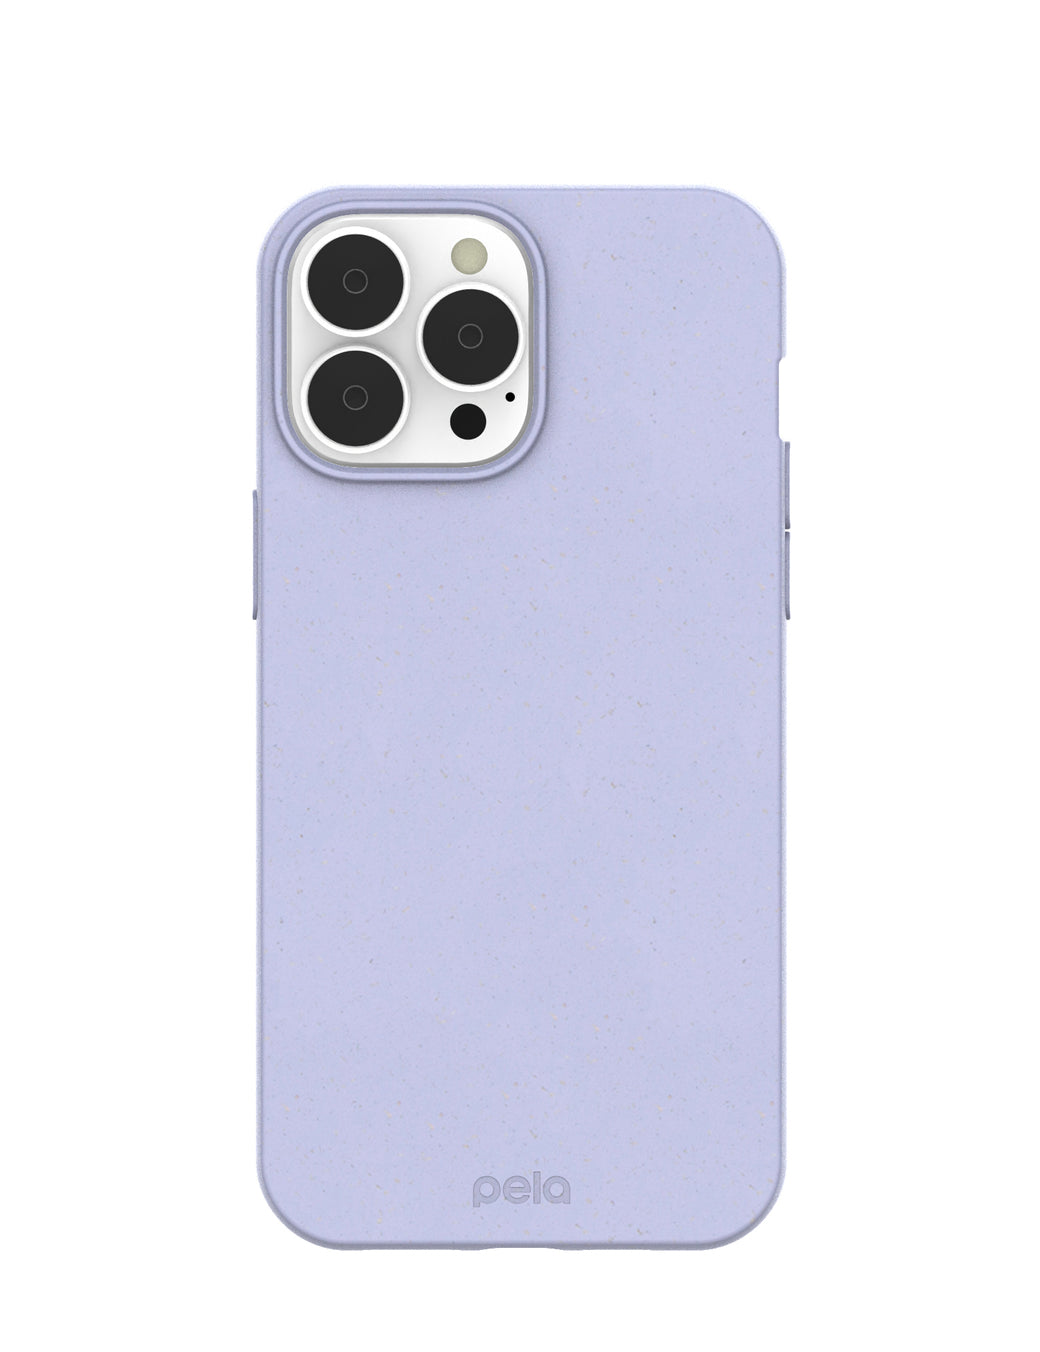 Lavender iPhone 13 Pro Max Case